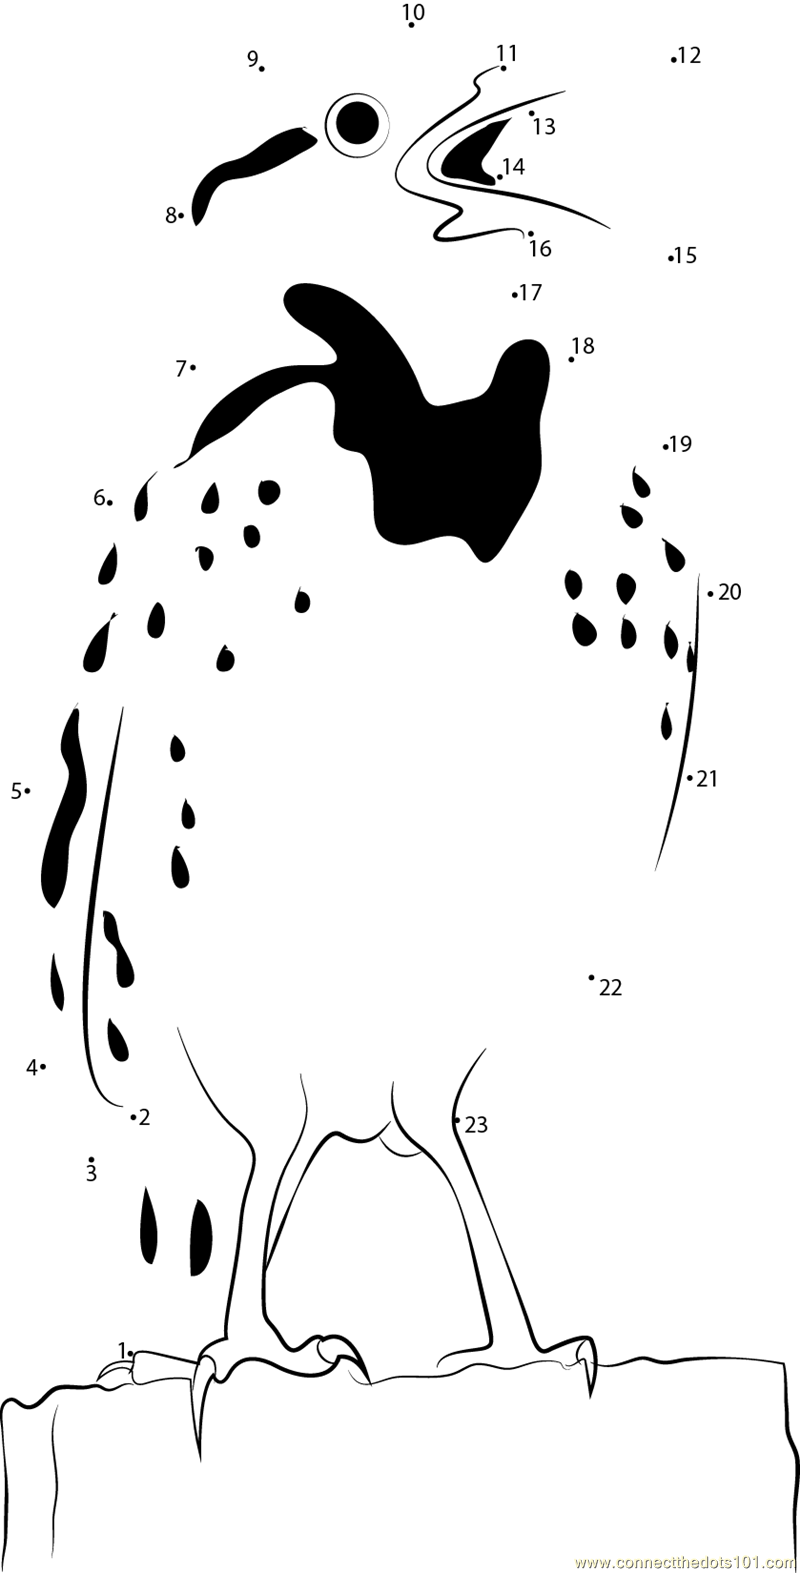 Meadowlark Bird